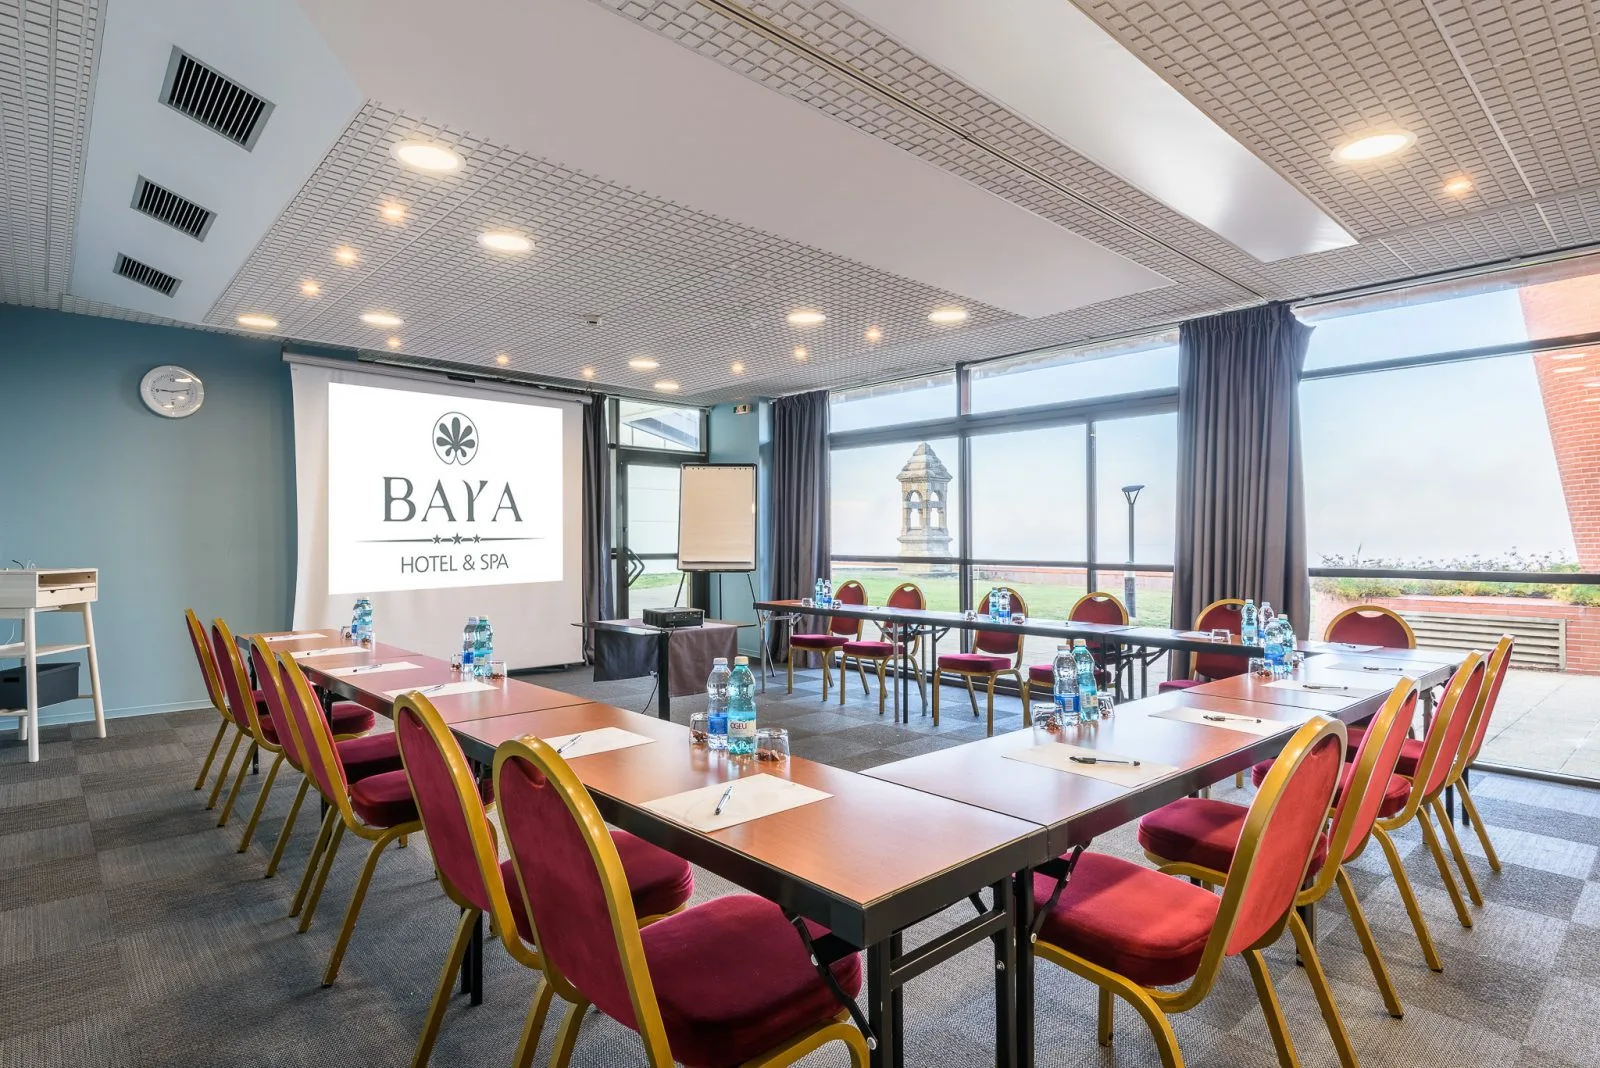 Une des salles de réunions du Baya Hotel de Capbreton pour vos séminaires et réunions d'entreprise.